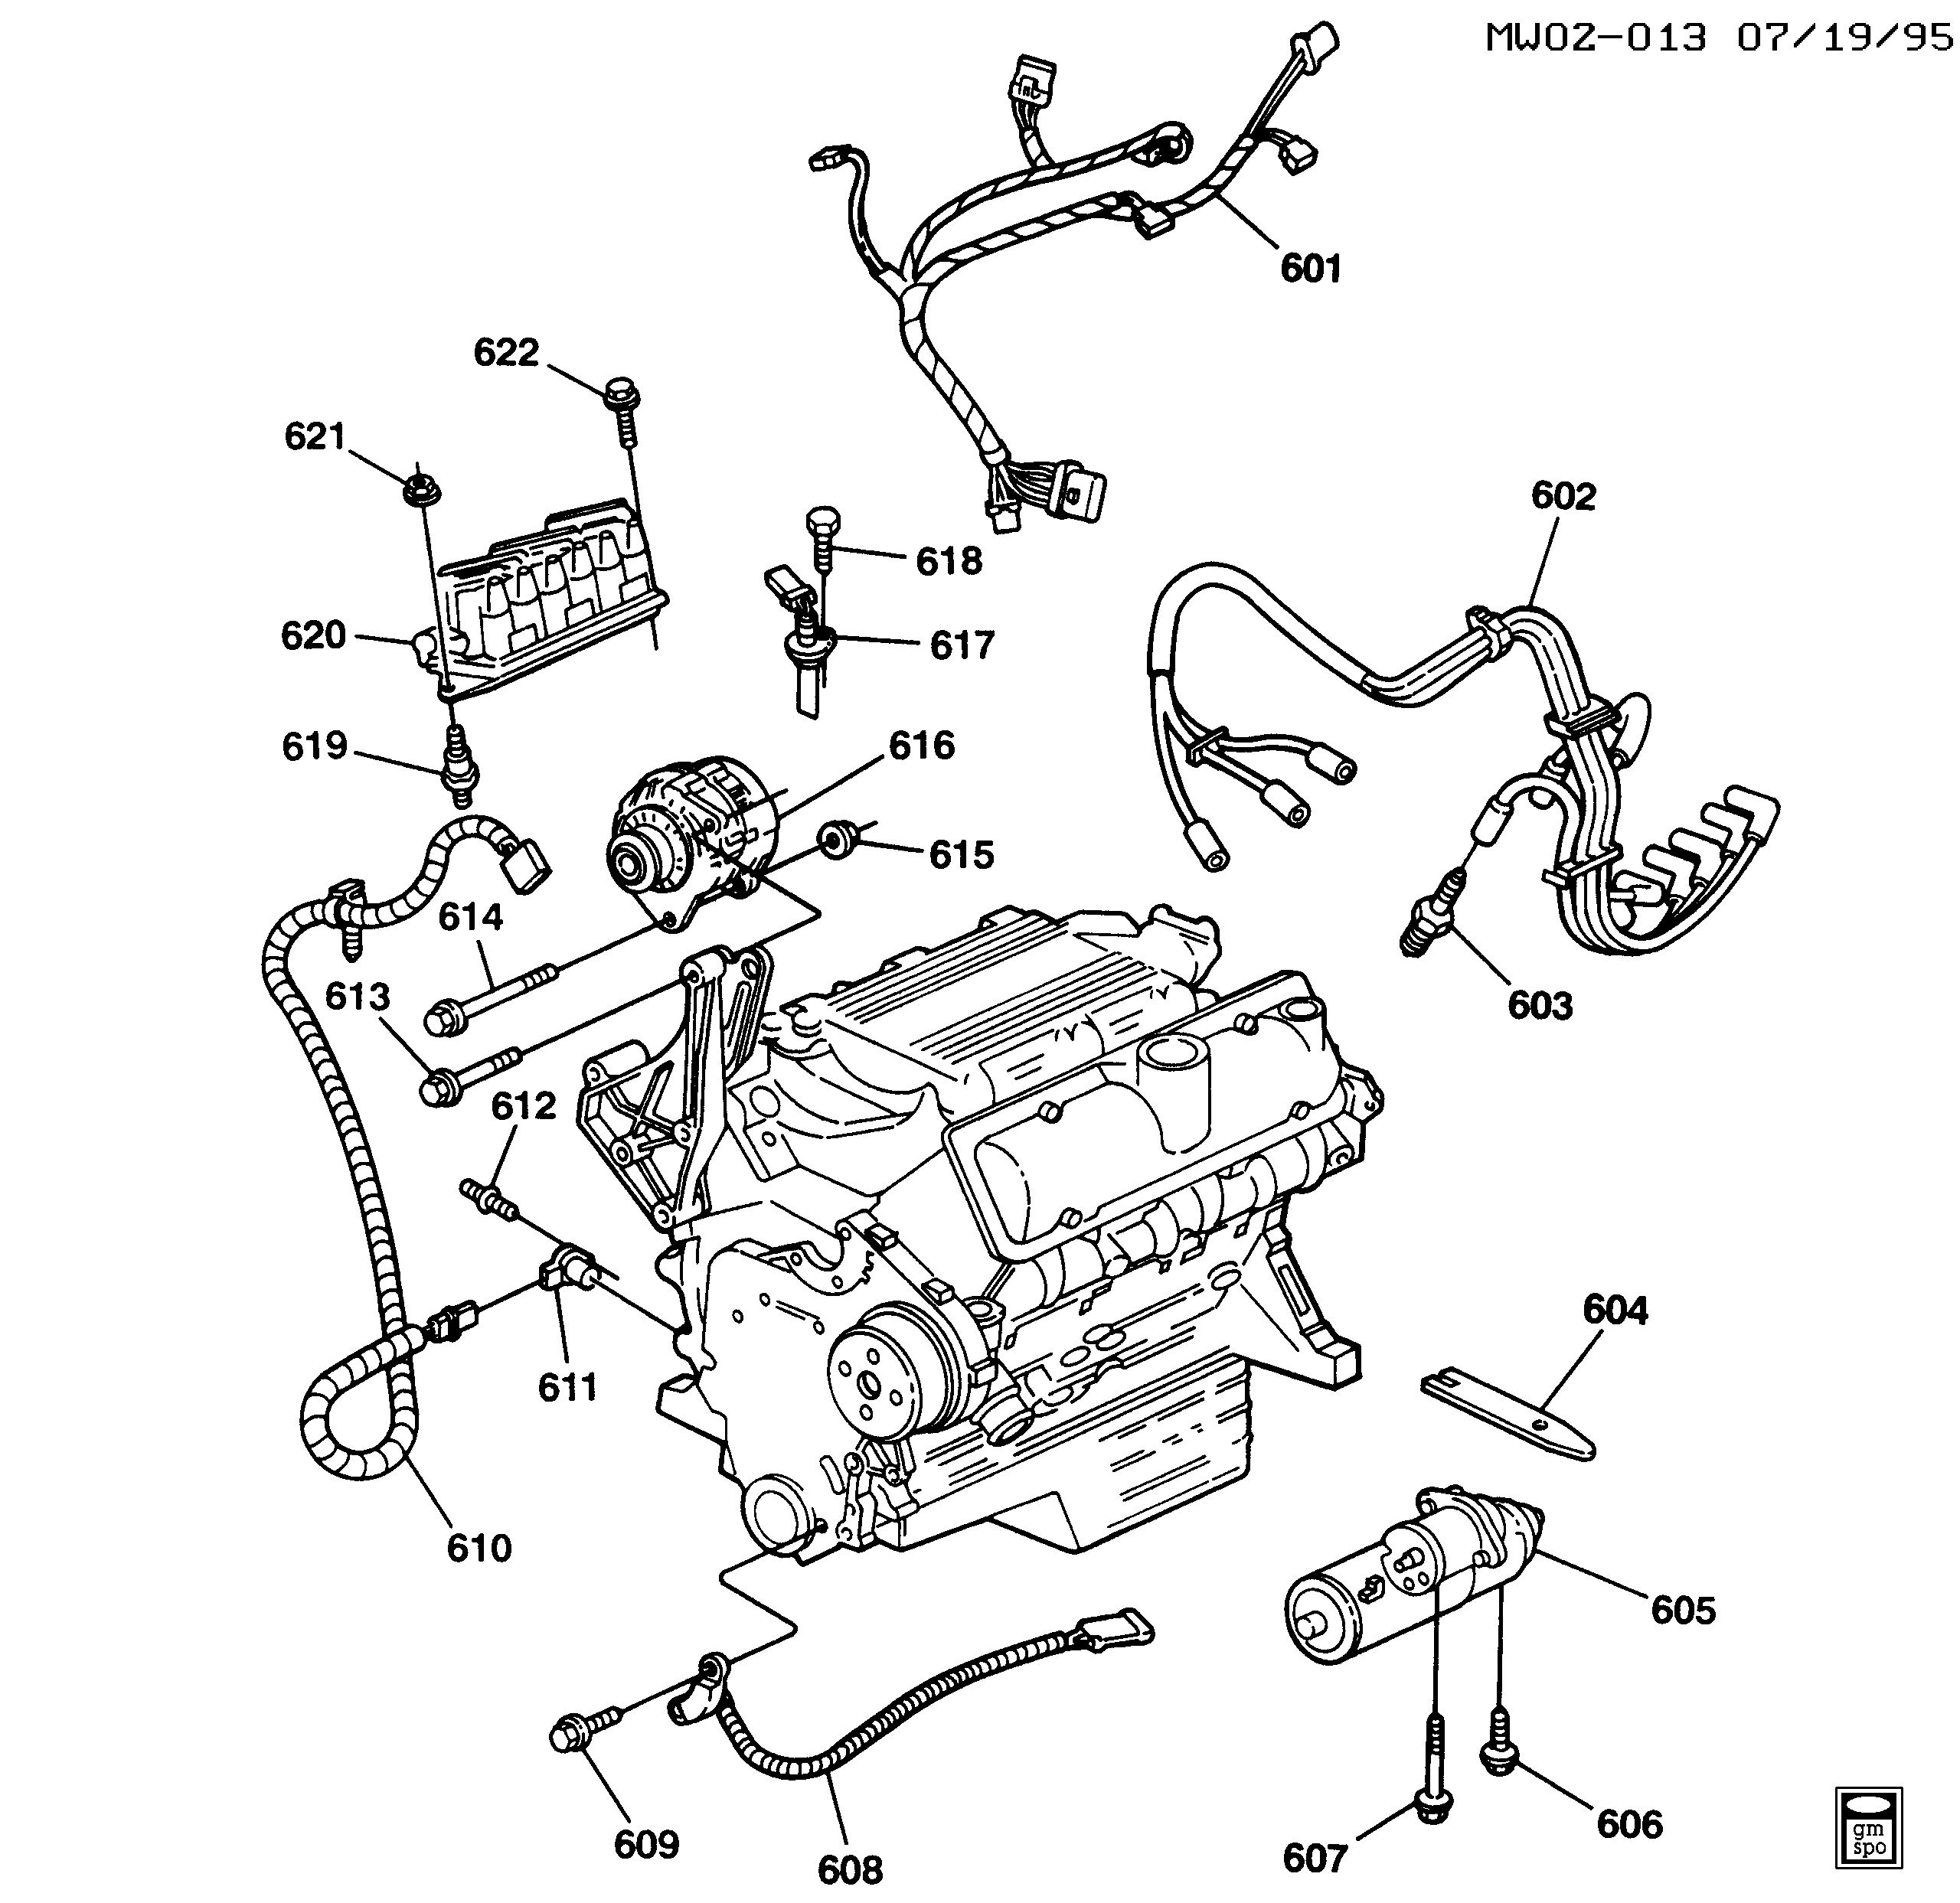 1997-1999 W ENGINE ELECTRICAL (L82/3.1M)